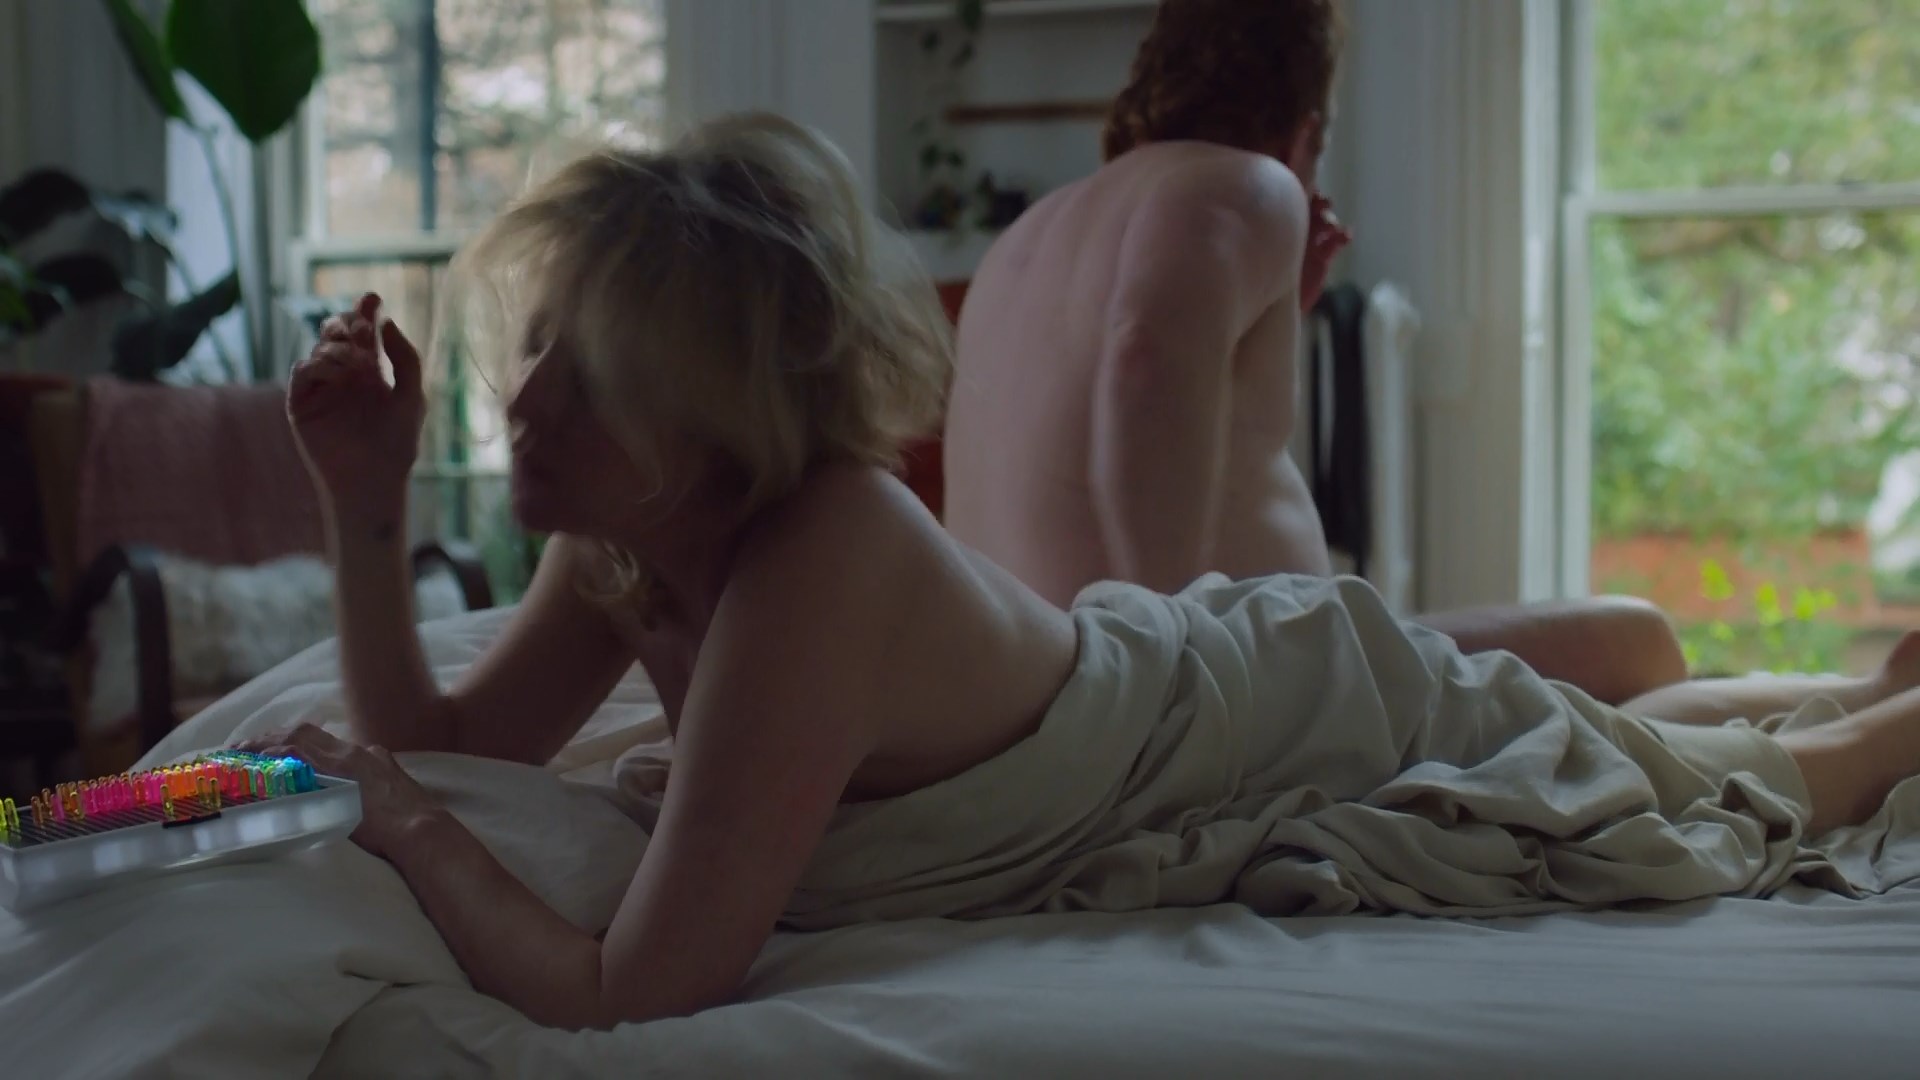 Nude Video Celebs Tasha Lawrence Nude High Maintenance S04e08 2020